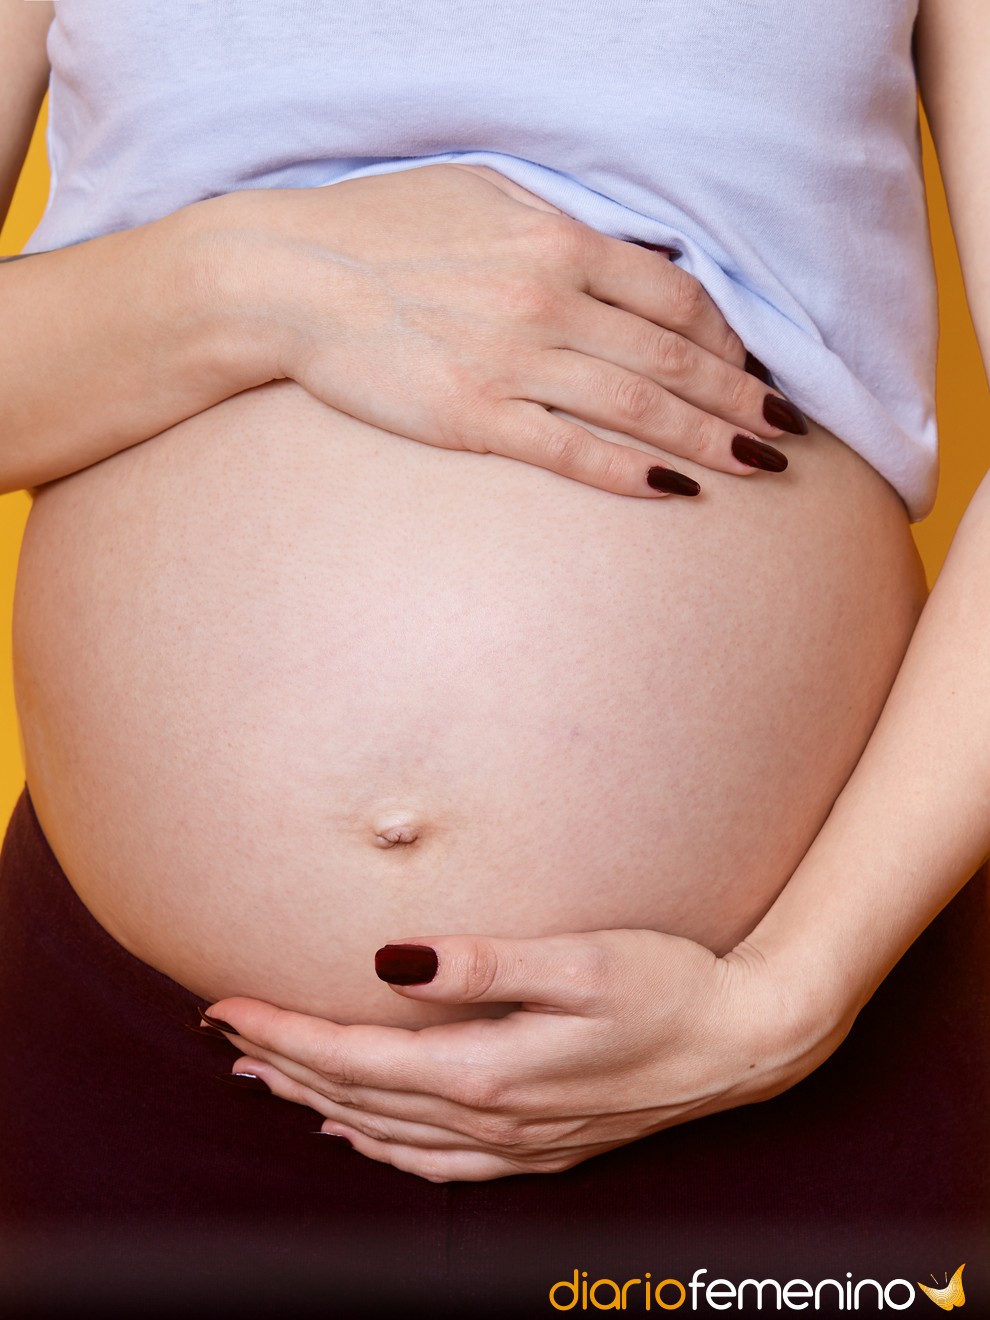 Puedo ponerme uñas postizas durante el embarazo? Recomendaciones útiles